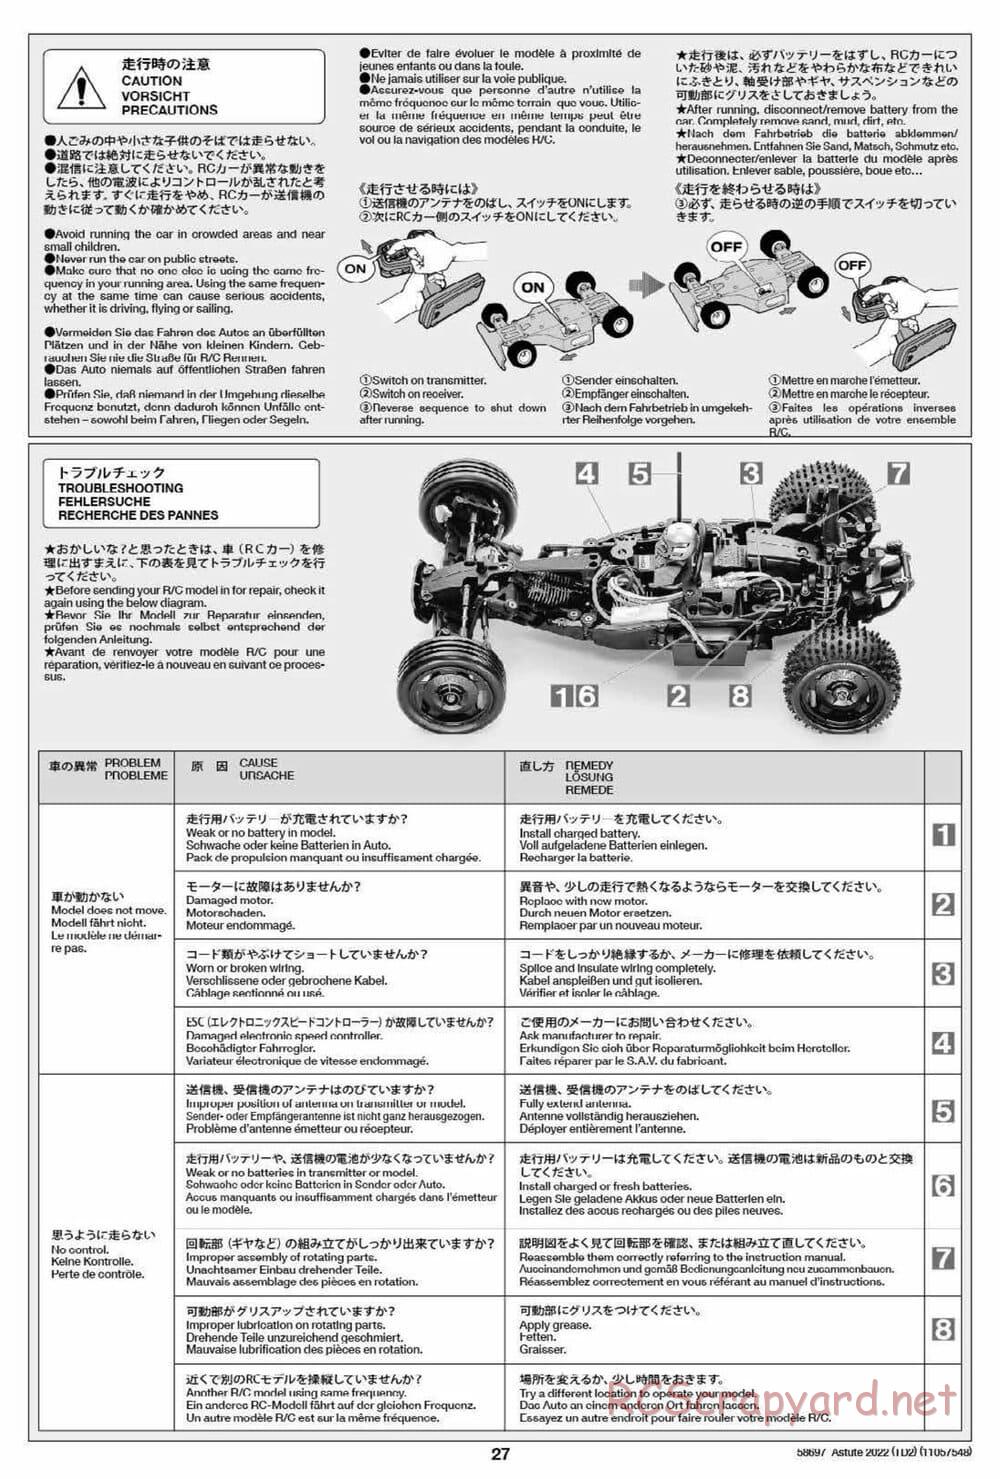 Tamiya - Astute 2022 - TD2 Chassis - Manual - Page 27